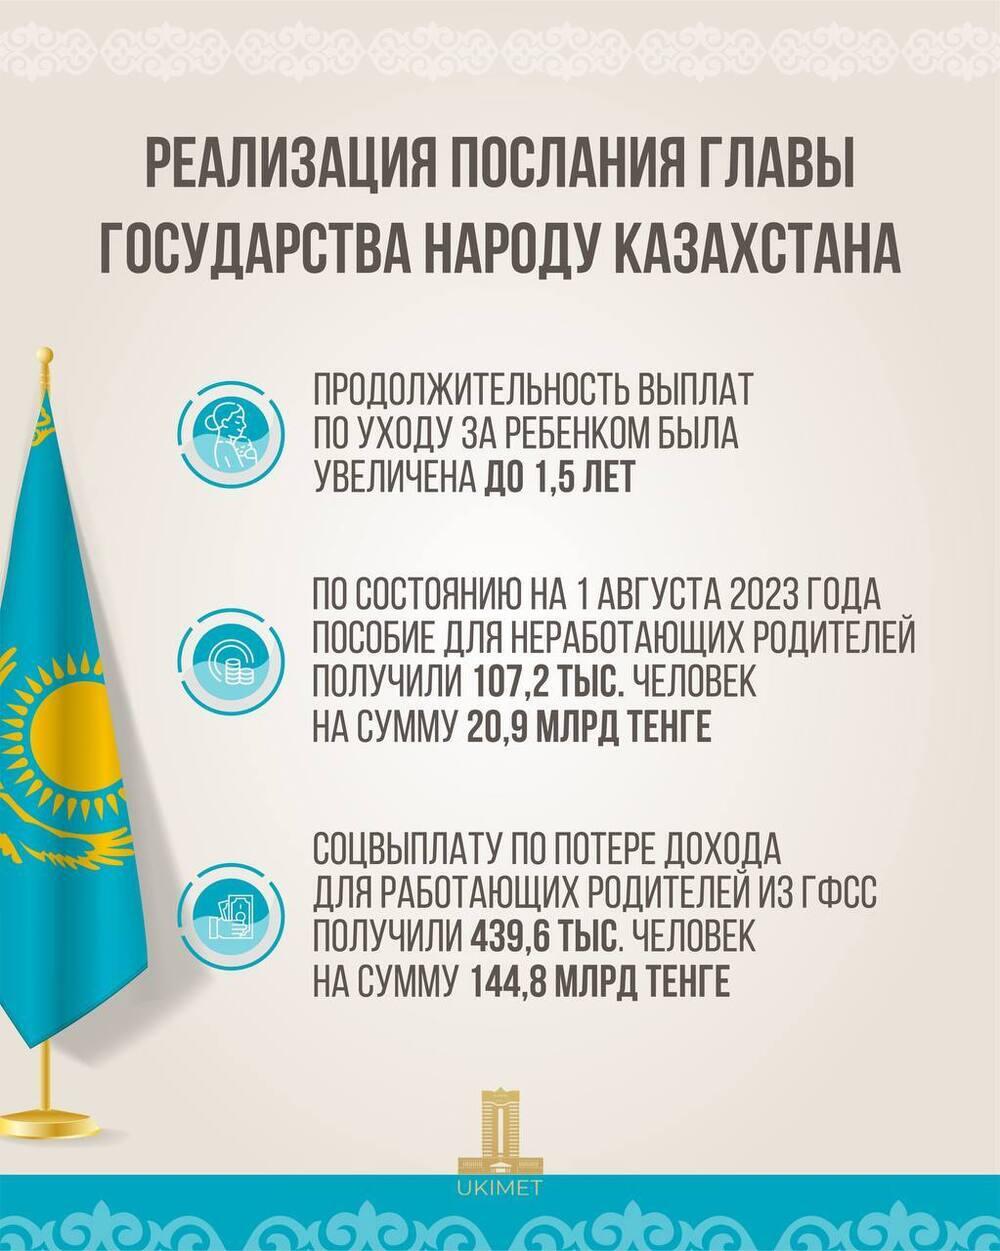 В Казахстане неработающим родителям из республиканского бюджета выплатили порядка 21 млрд тенге. Фото: t.me/KZgovernment